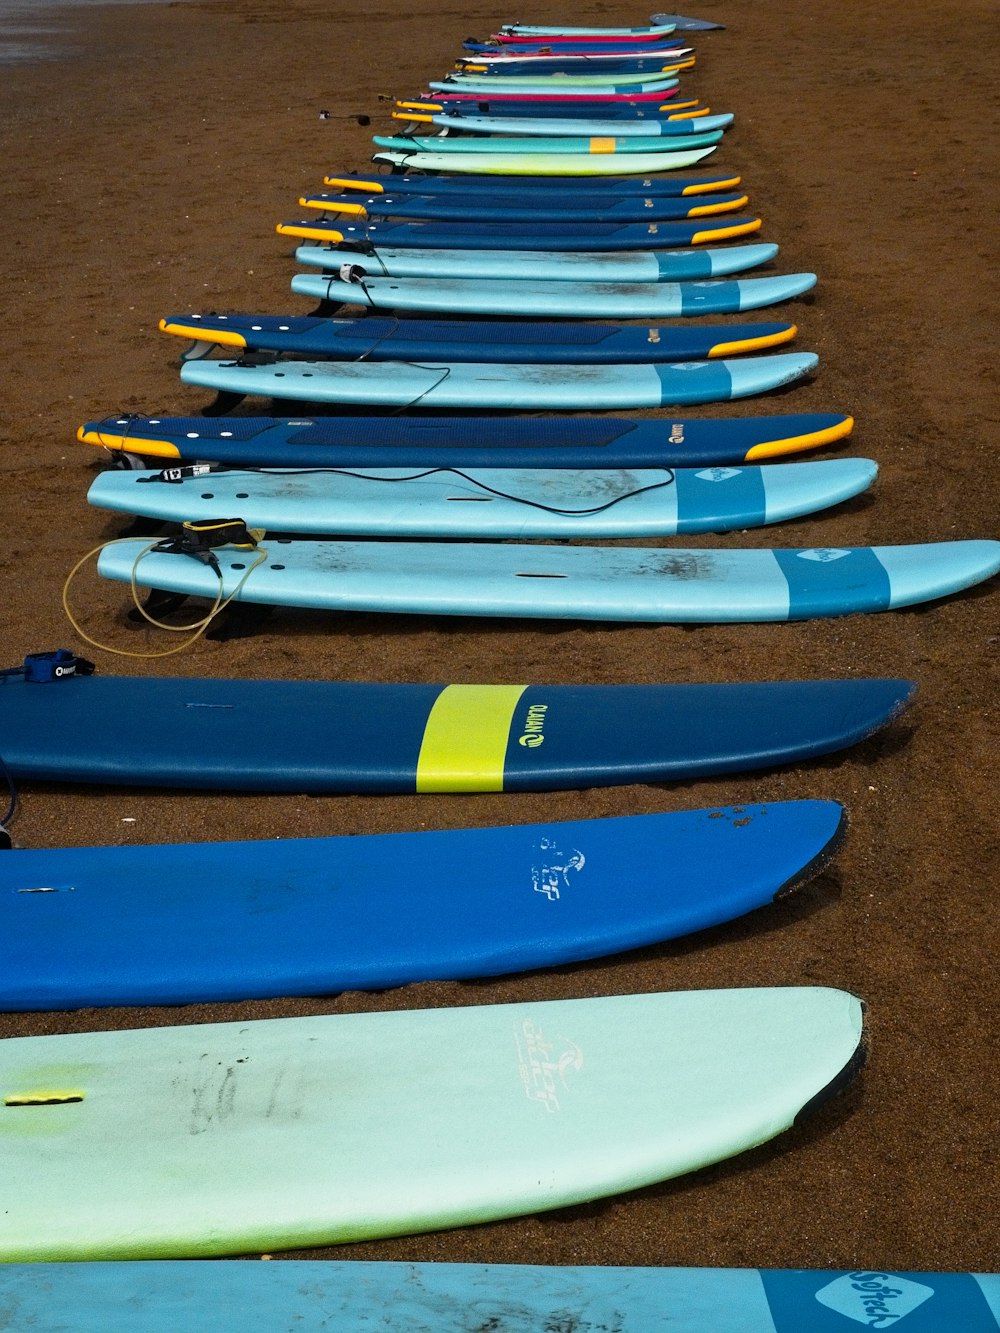 blue and yellow kayaks on brown sand